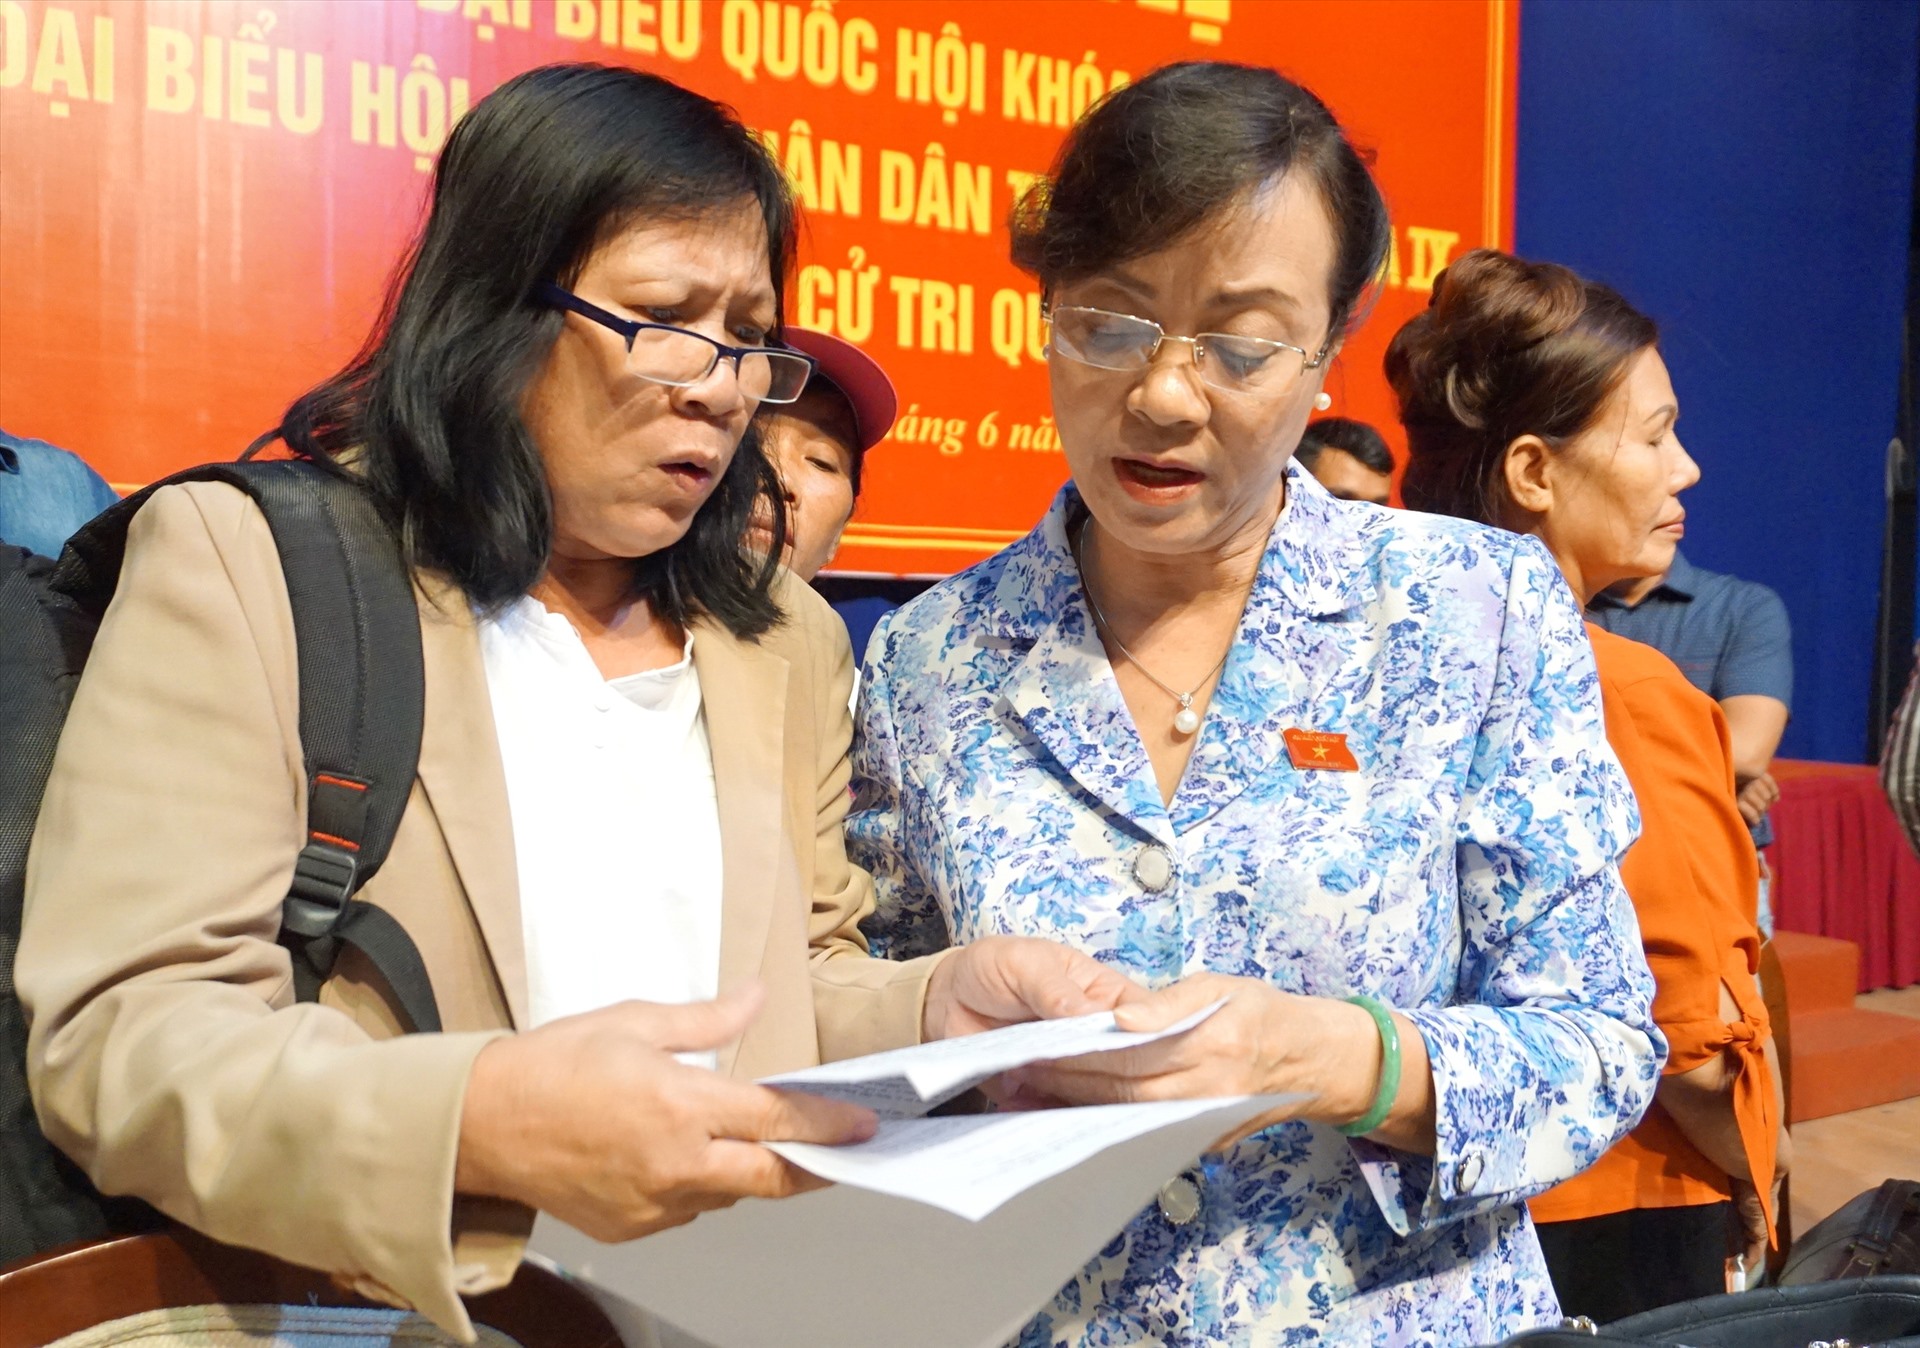 Cử tri quận 2 trao đổi với bà Nguyễn Thị Quyết Tâm sau buổi tiếp xúc cử tri trước kỳ họp.  Ảnh: Minh Quân